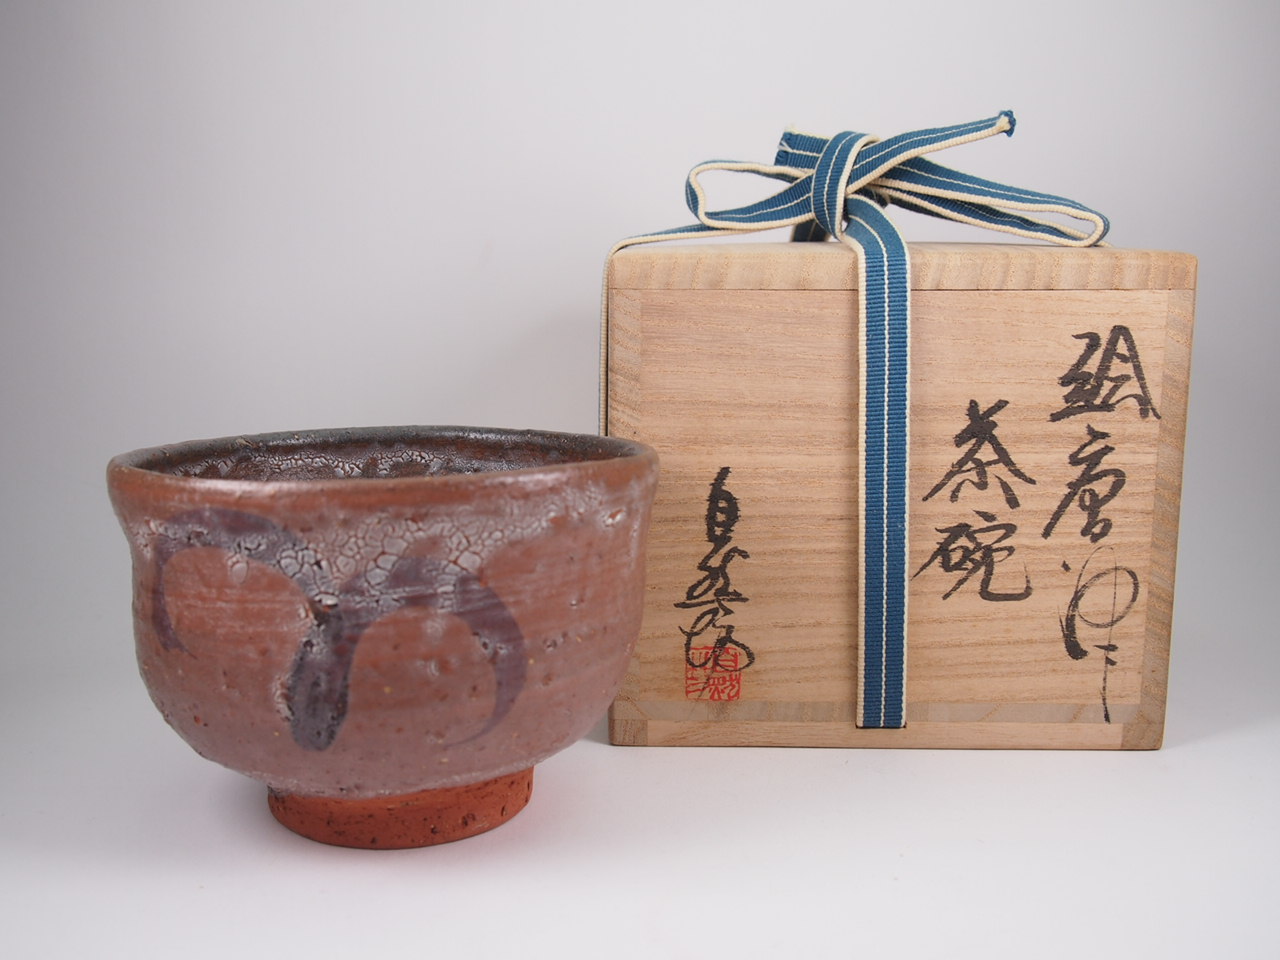 中川自然坊 絵唐津 茶碗を買取致しました。